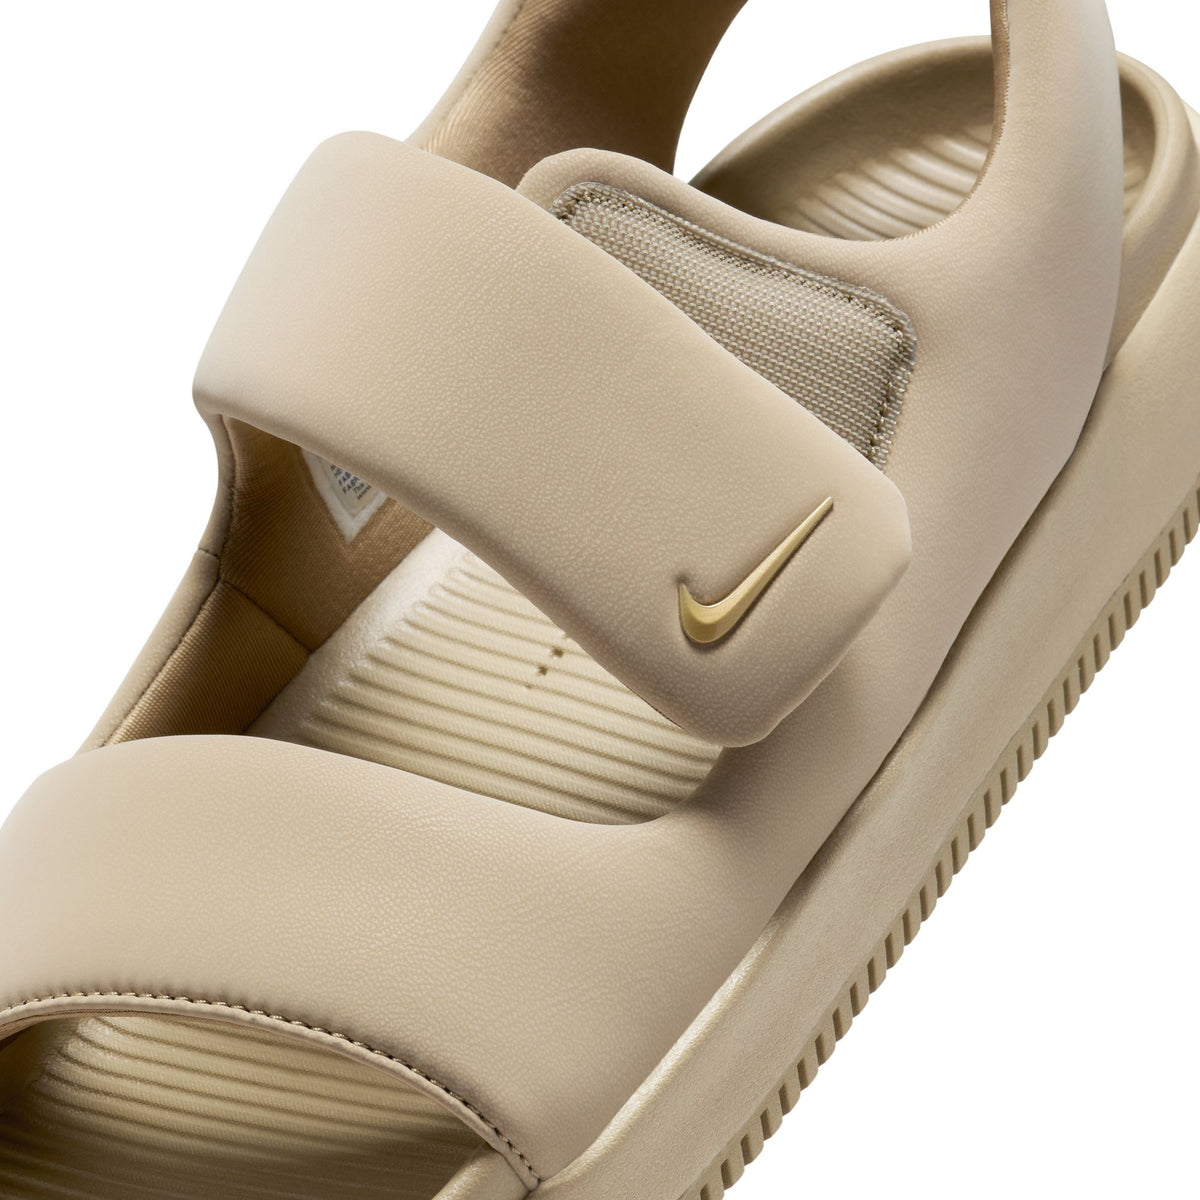 Nike Calm Sandals "Khaki" - Men